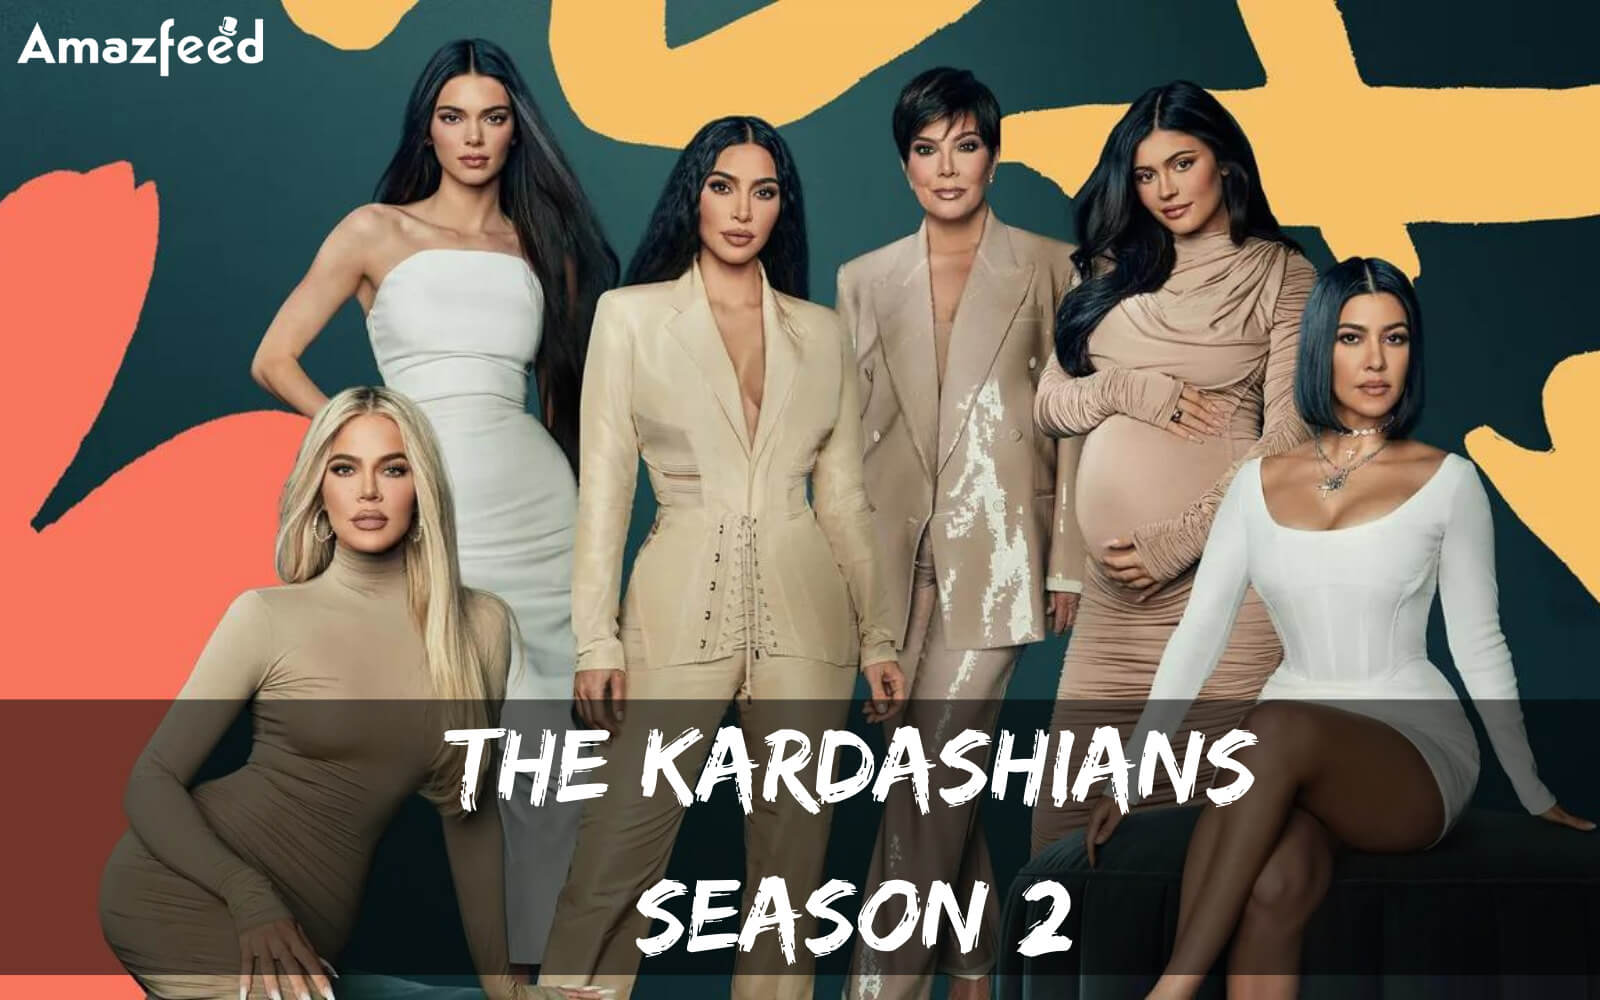 The Kardashians Season 2 release date